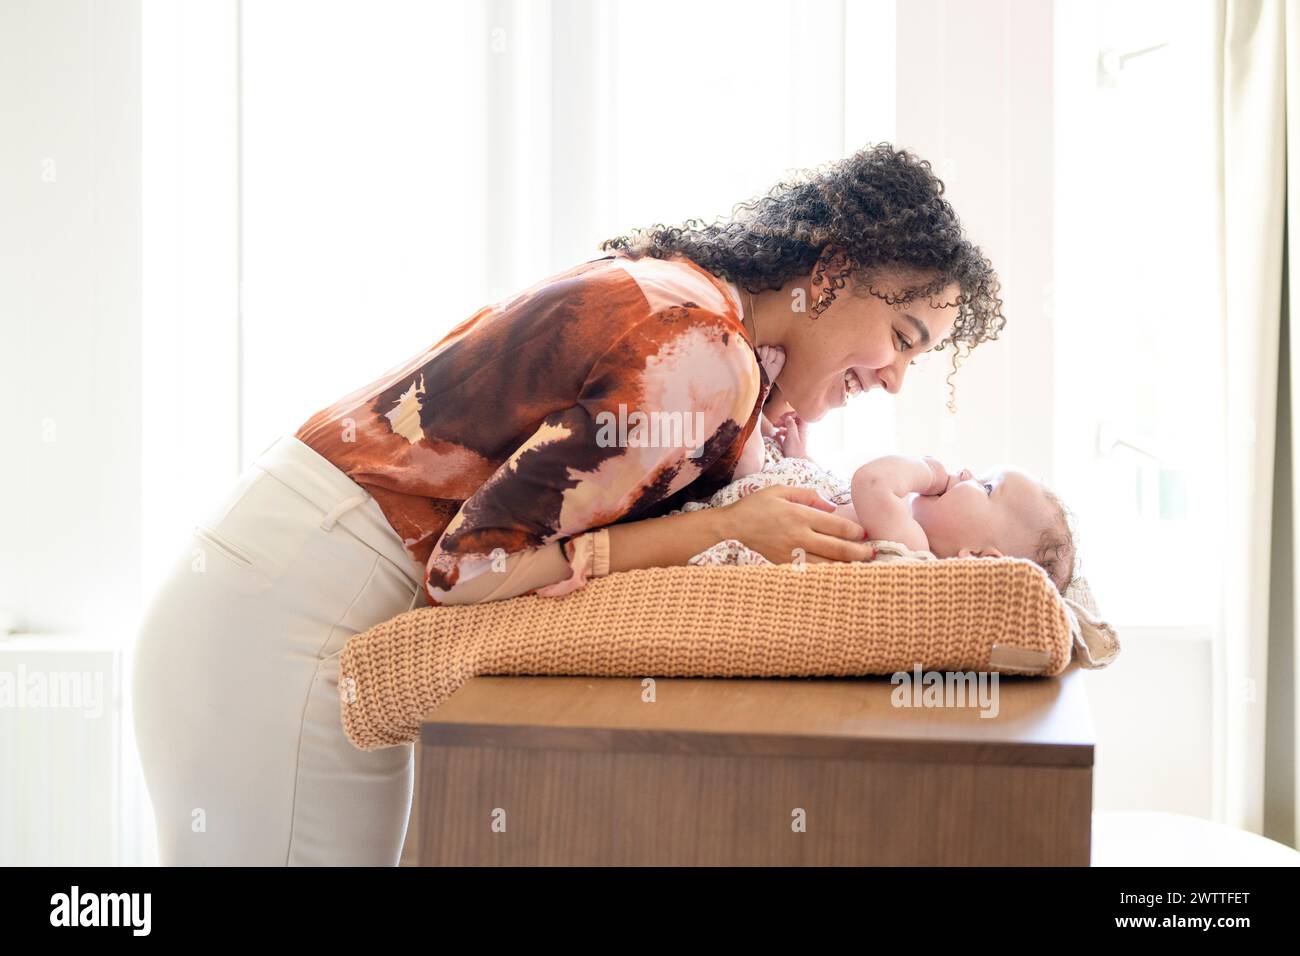 Un momento tenero tra una madre e il suo bambino immerso nella luce soffusa e naturale. Foto Stock